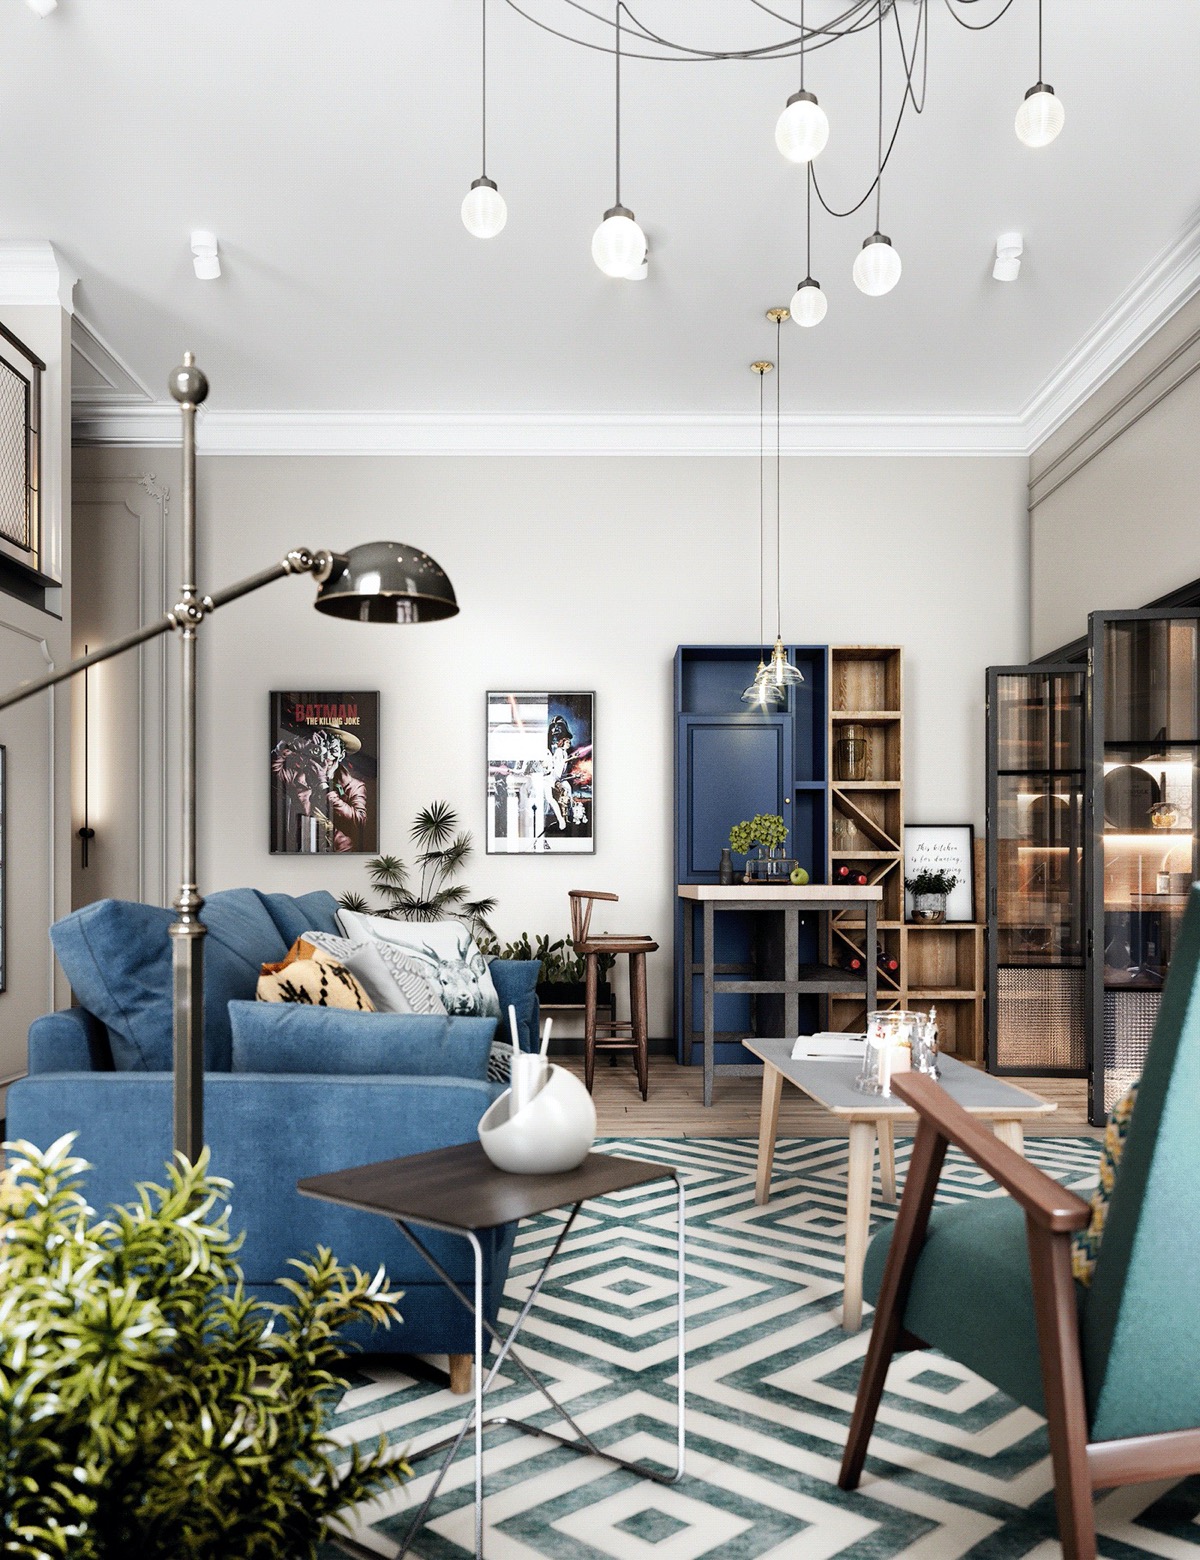 Toàn cảnh phòng khách căn hộ hiện đại với sofa màu xanh, bàn trà gỗ, thảm trải kẻ sọc, bàn phụ, đèn sàn